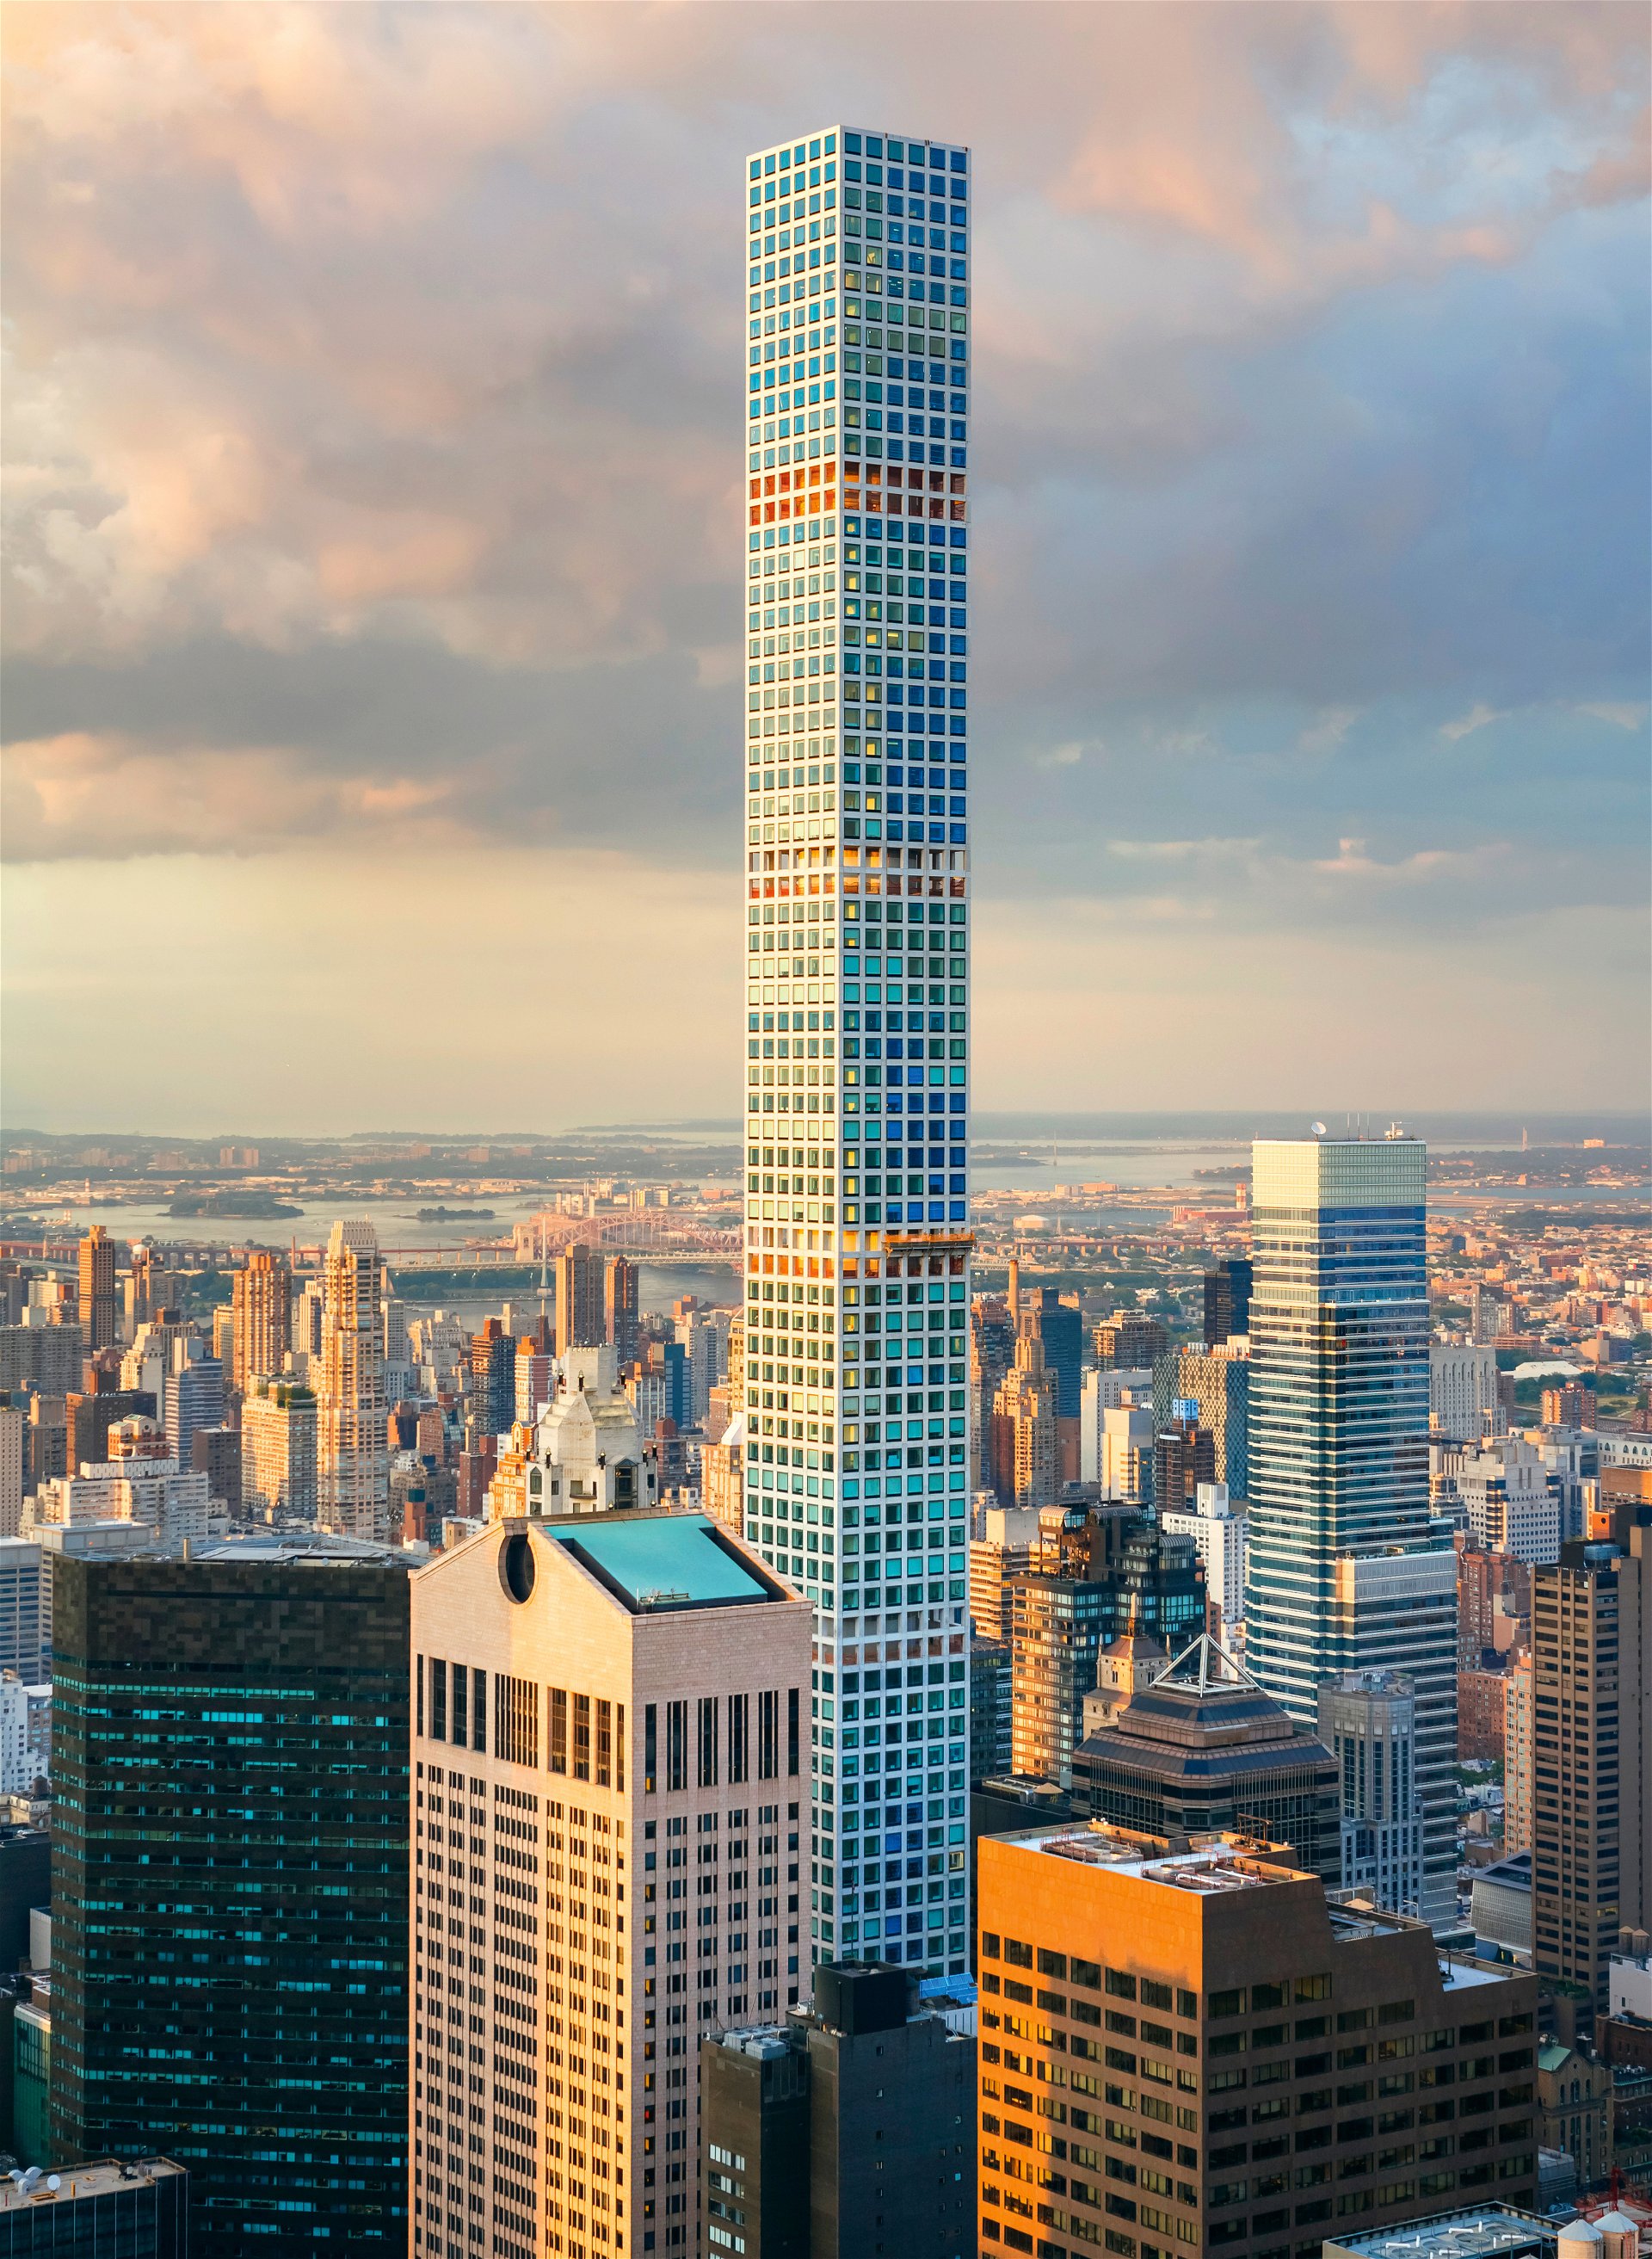 432 Park Avenue, New York 28 mal 28 Meter Grundfläche, dafür 425 Meter hoch – der Verkauf der Wohnungen im höchsten Supertall Skyscraper der westlichen Welt brachte dem Entwickler kolportierte drei Milliarden US-Dollar.